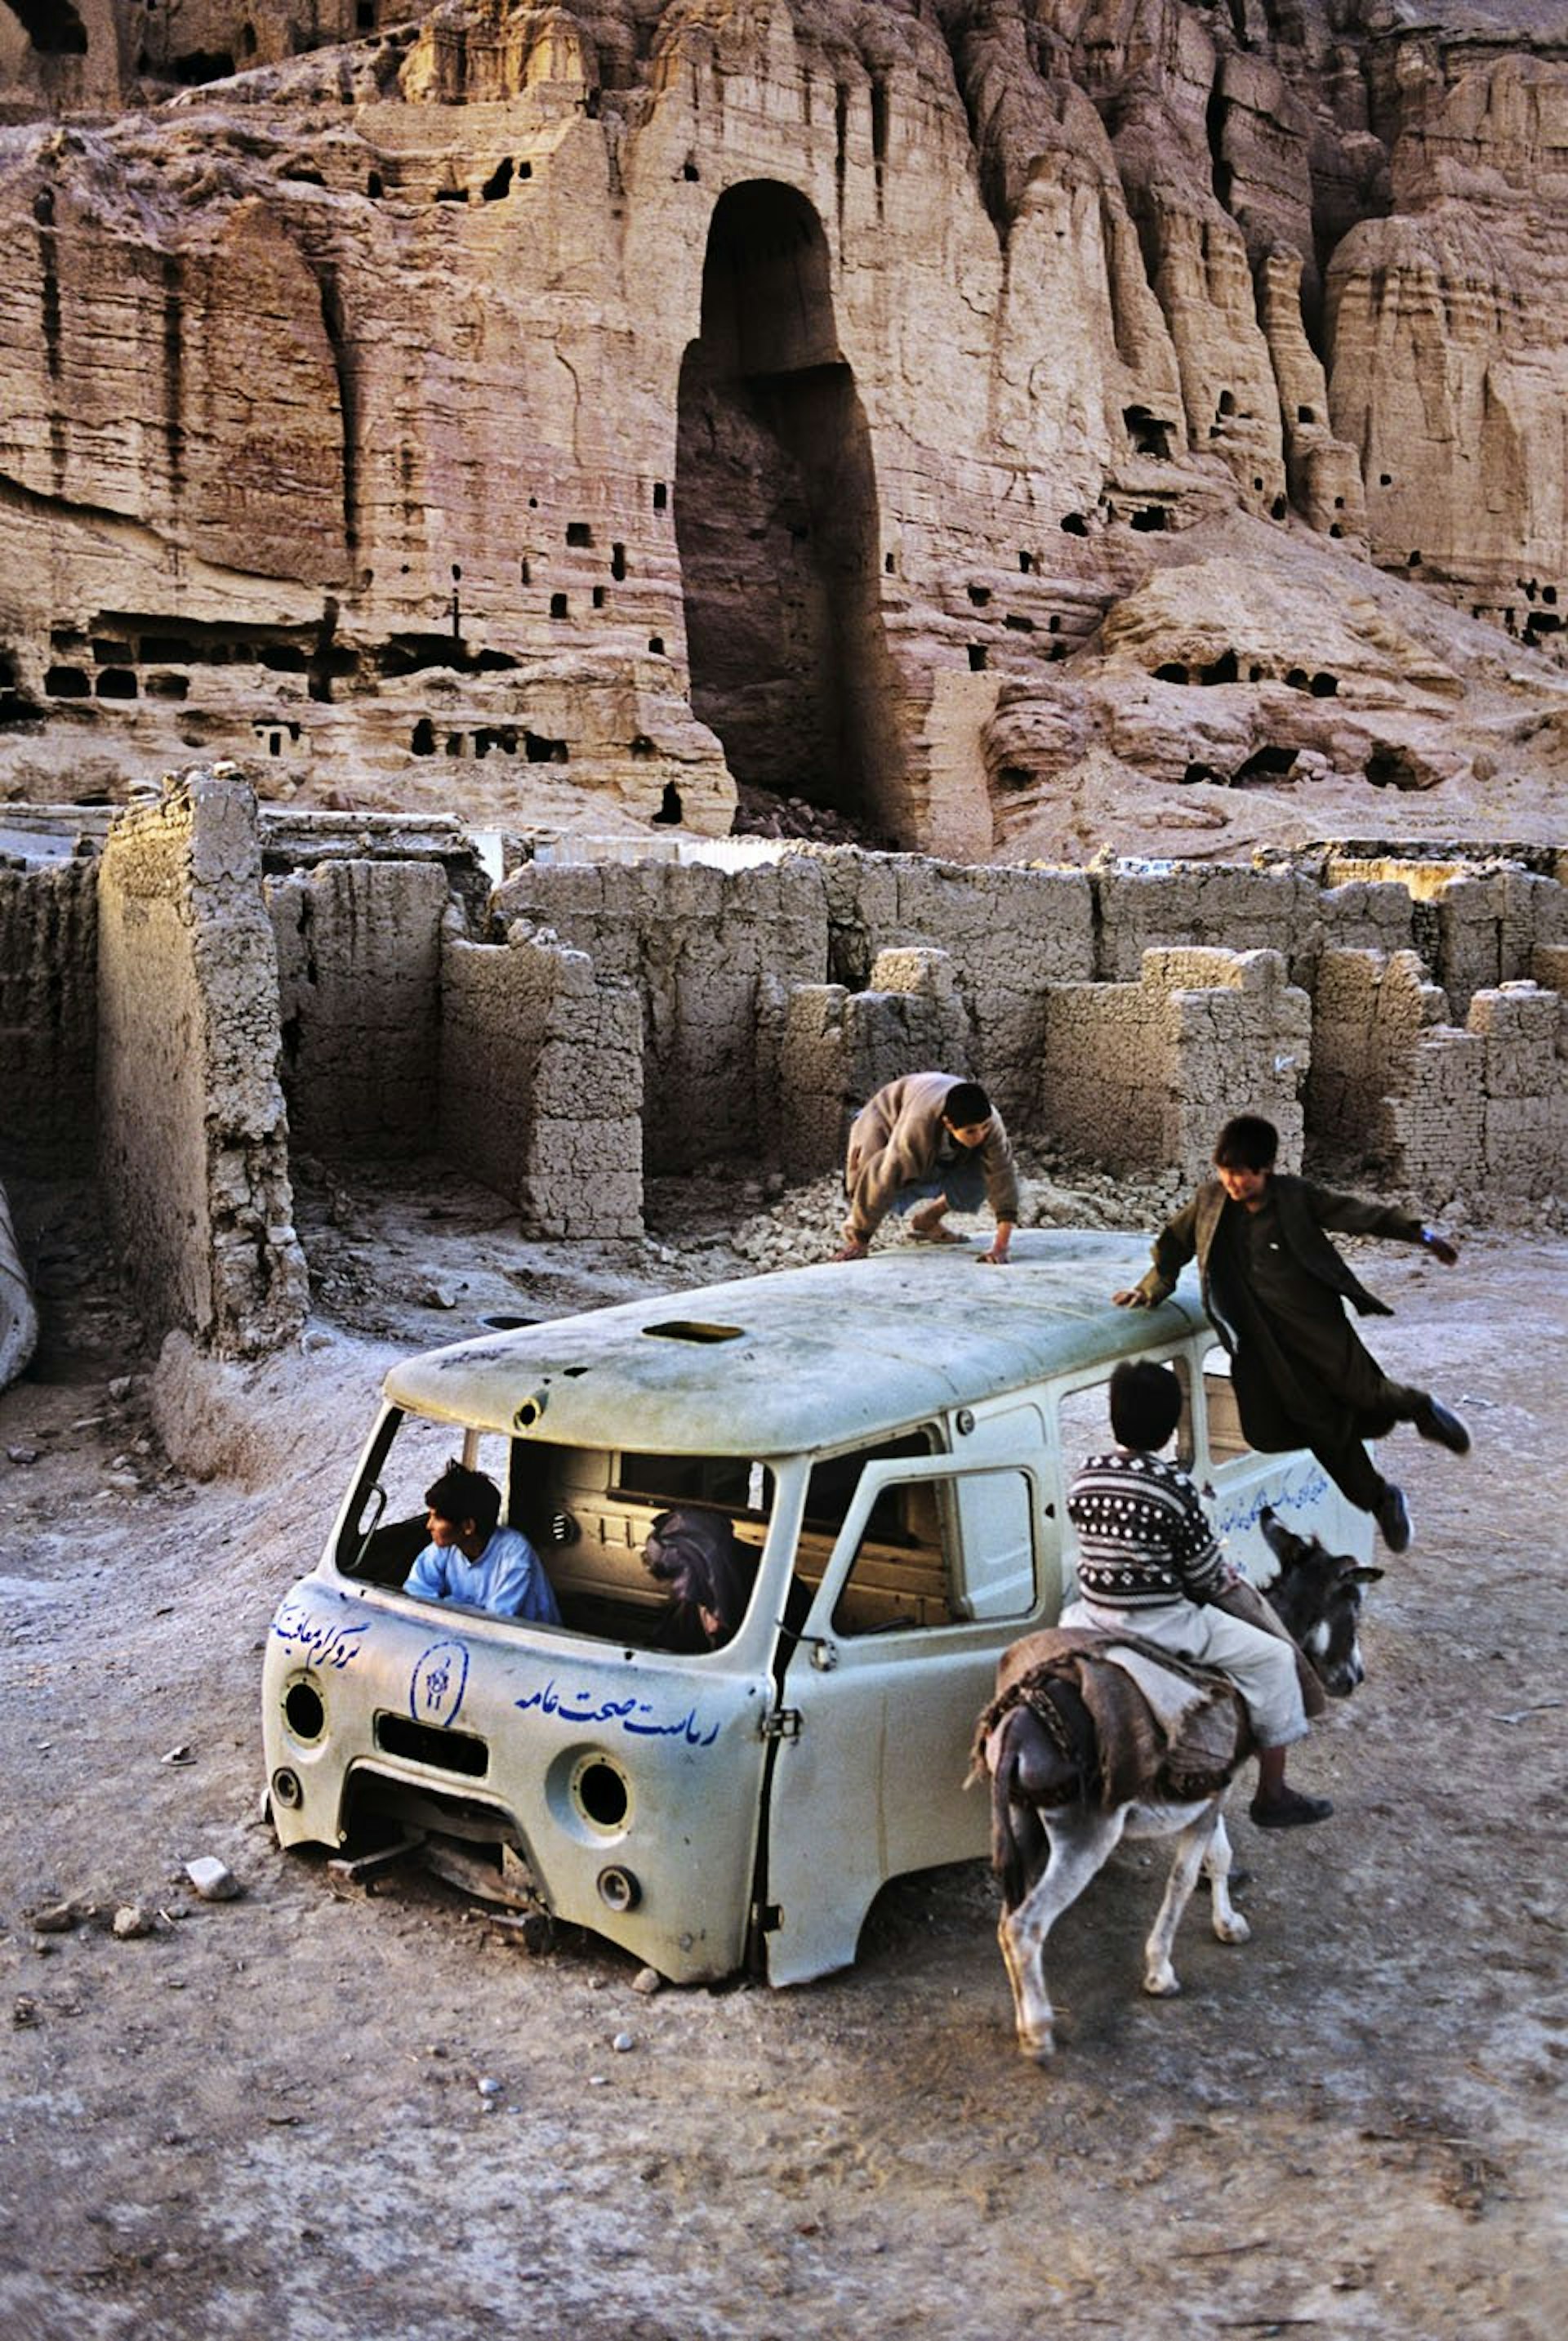 Bamiyan, 2003